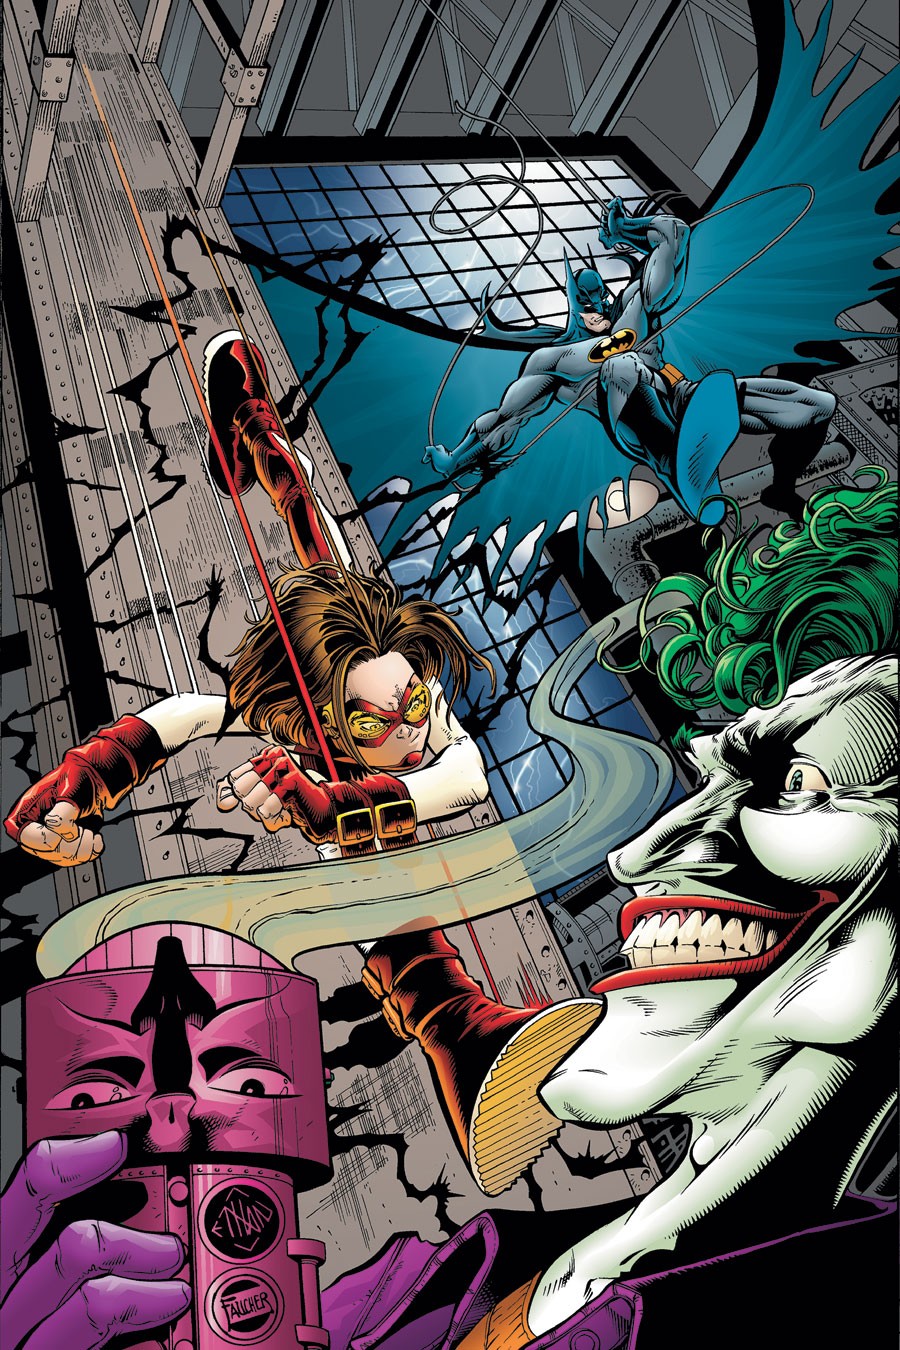 DC Comics Presents: Impulse Vol. 1 #1